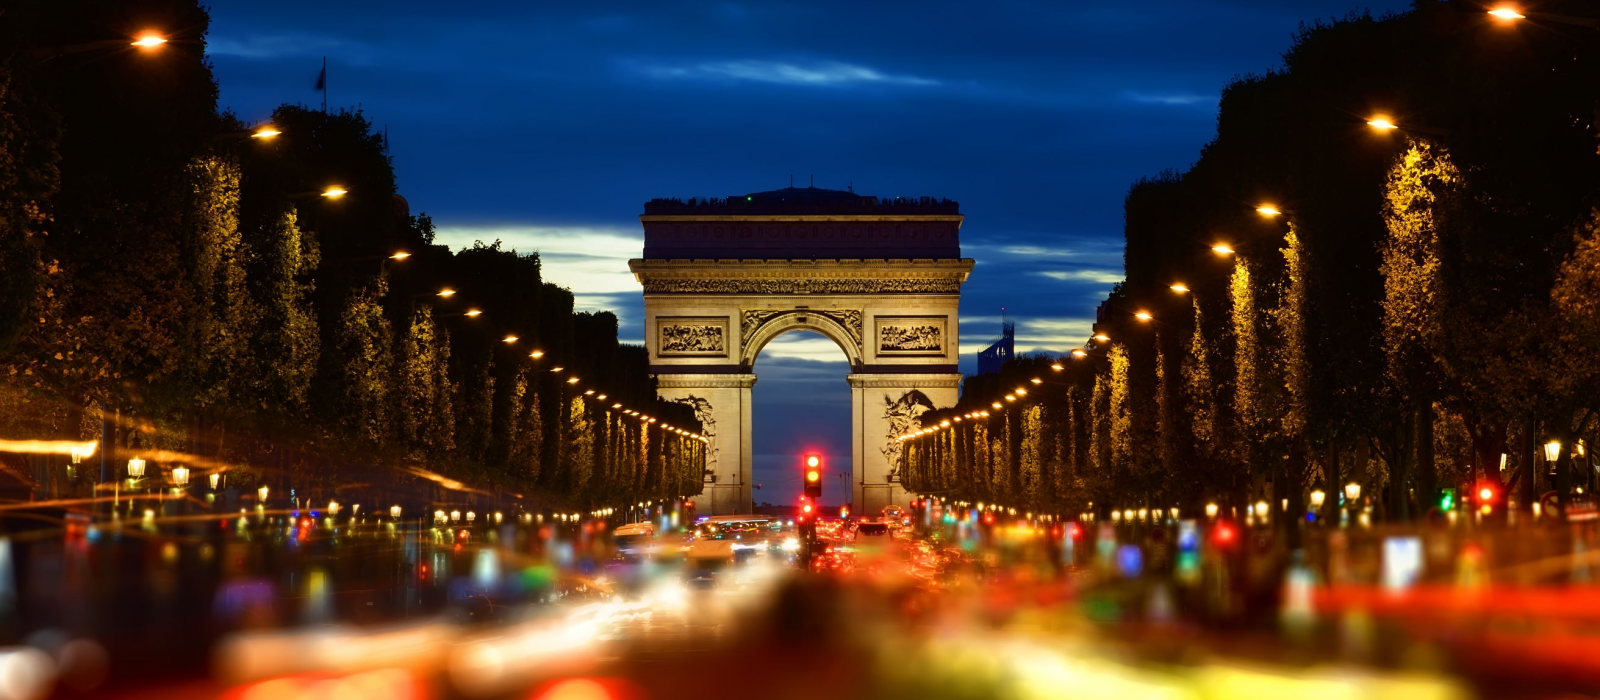 Ces villes françaises qui ont inspiré les artistes !